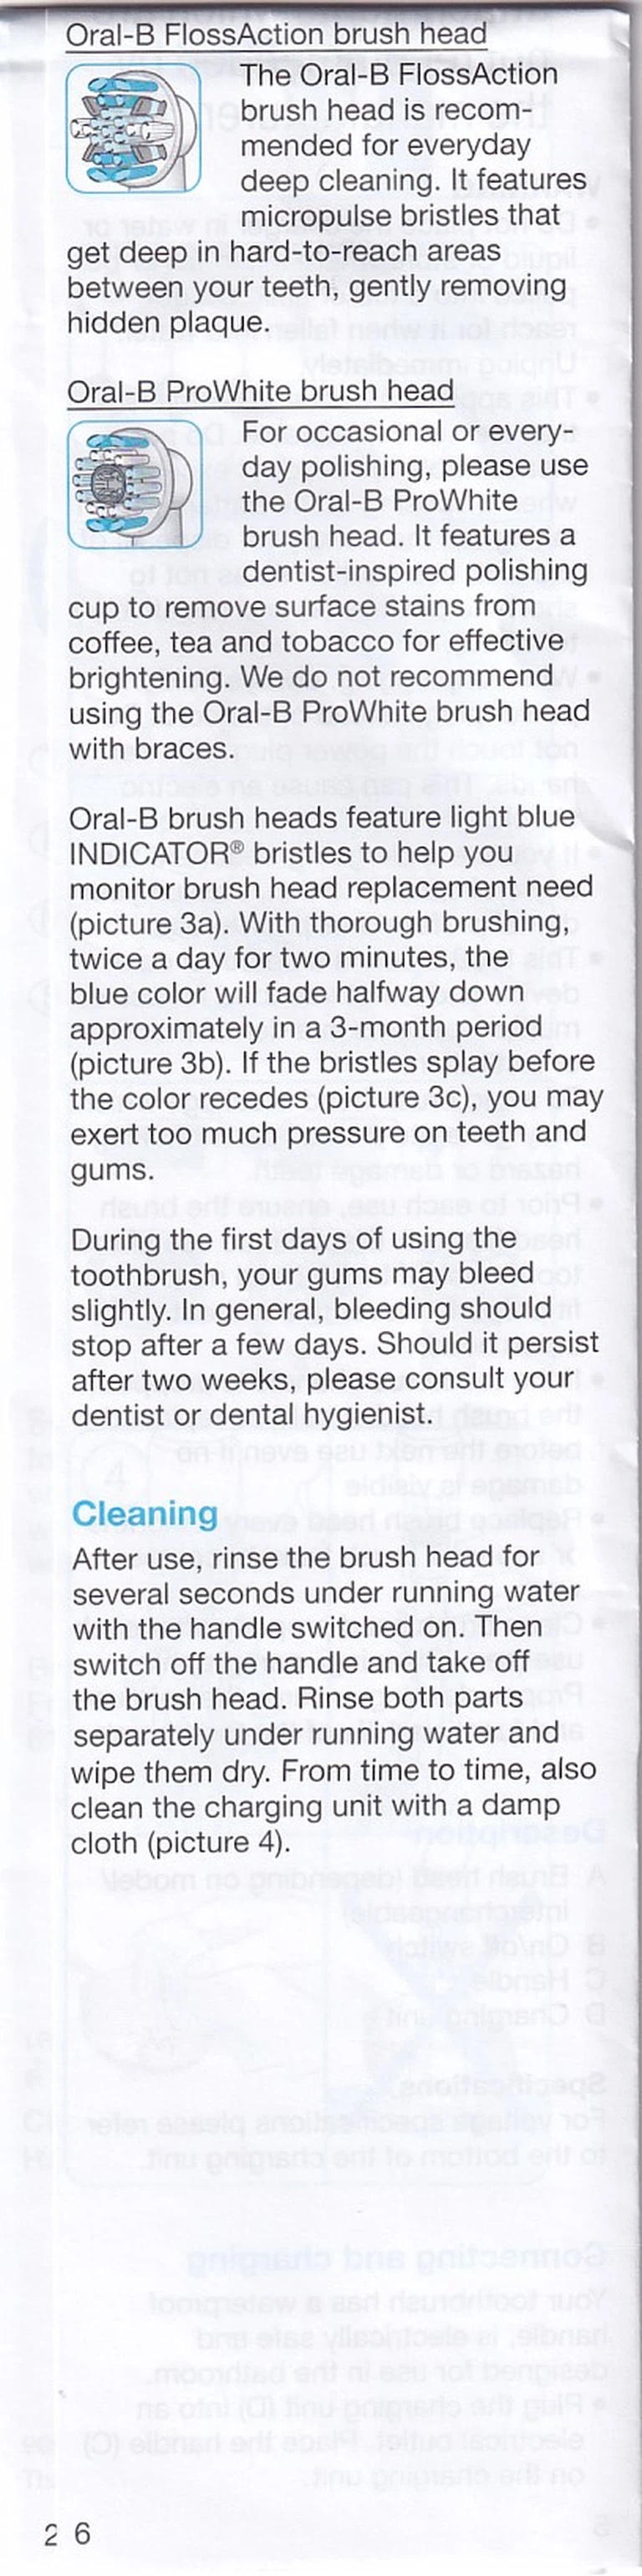 Bàn chải đánh răng điện Oral-B Vitality Crossaction Blue làm sạch mảng bám trên răng